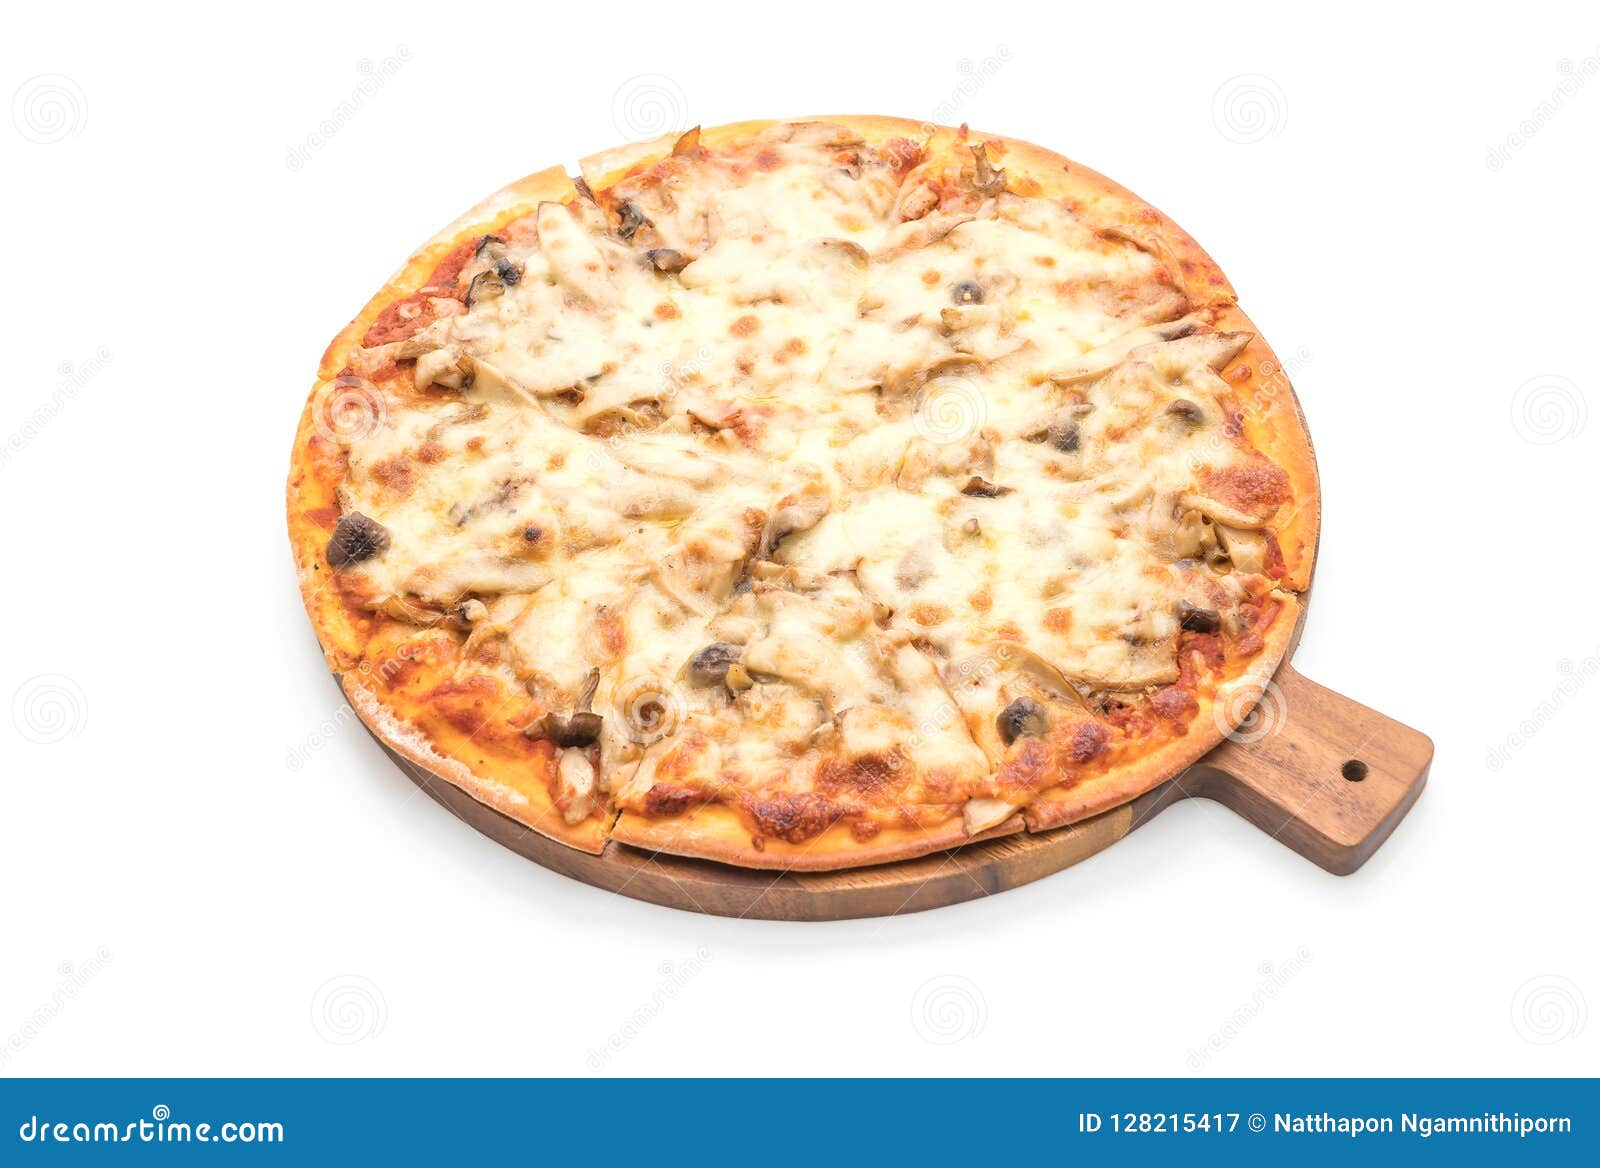 грибная пицца с белым соусом рецепт фото 14